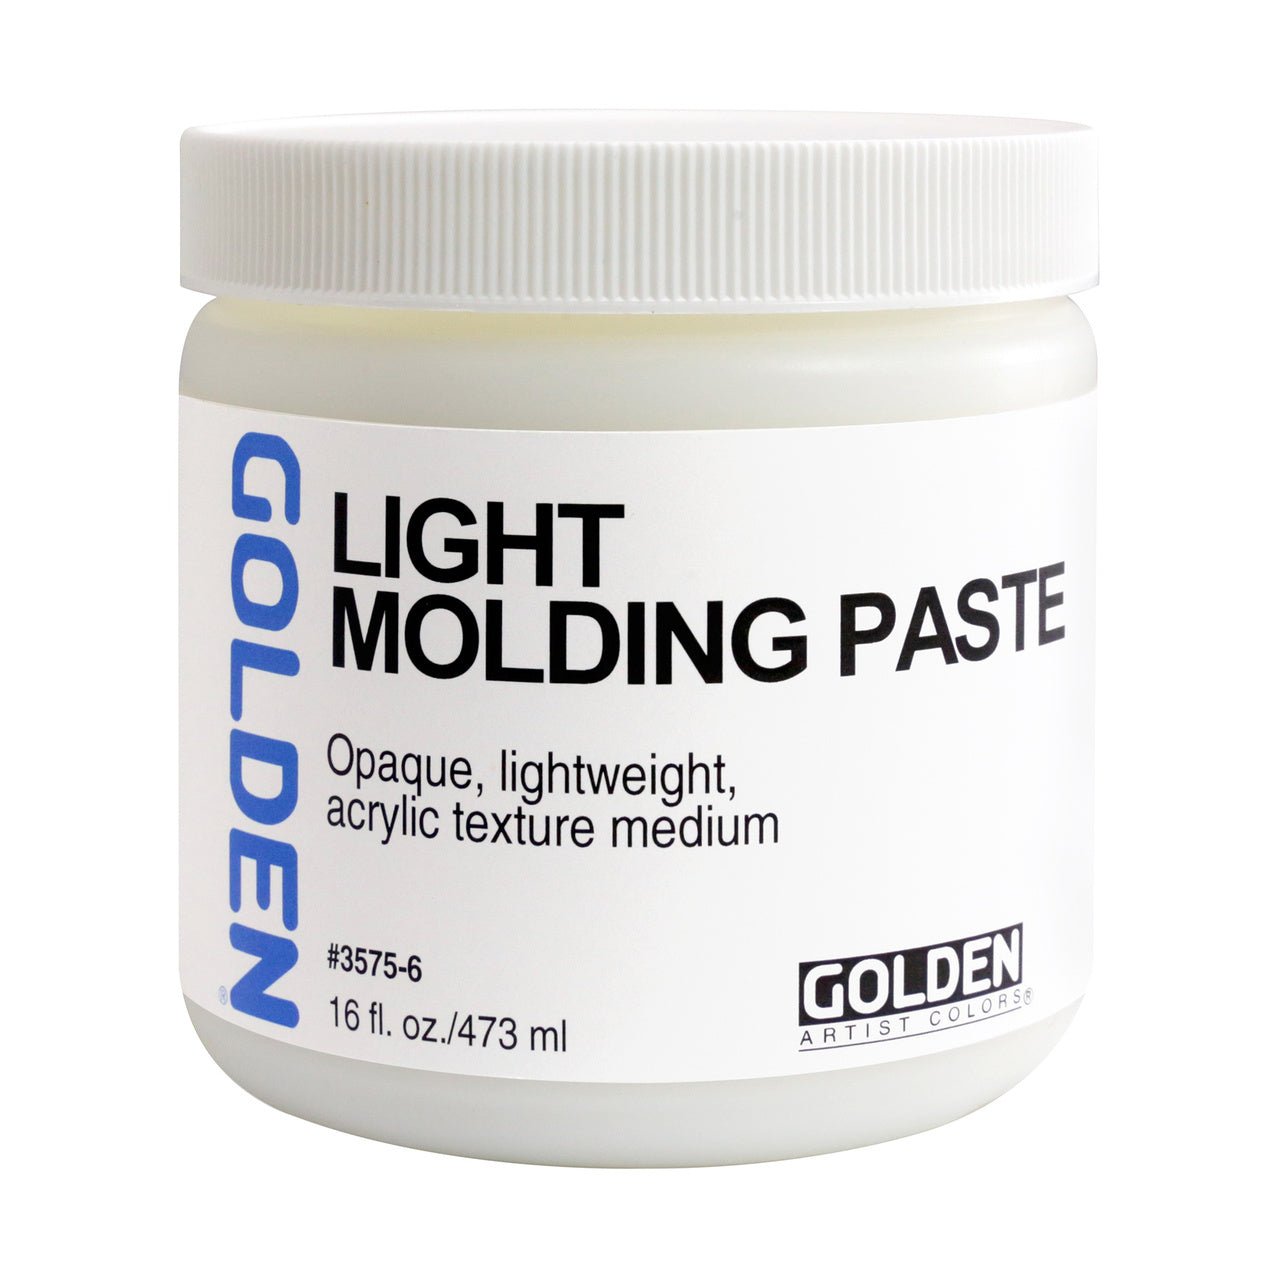 Golden Light Molding Paste 16 oz - merriartist.com